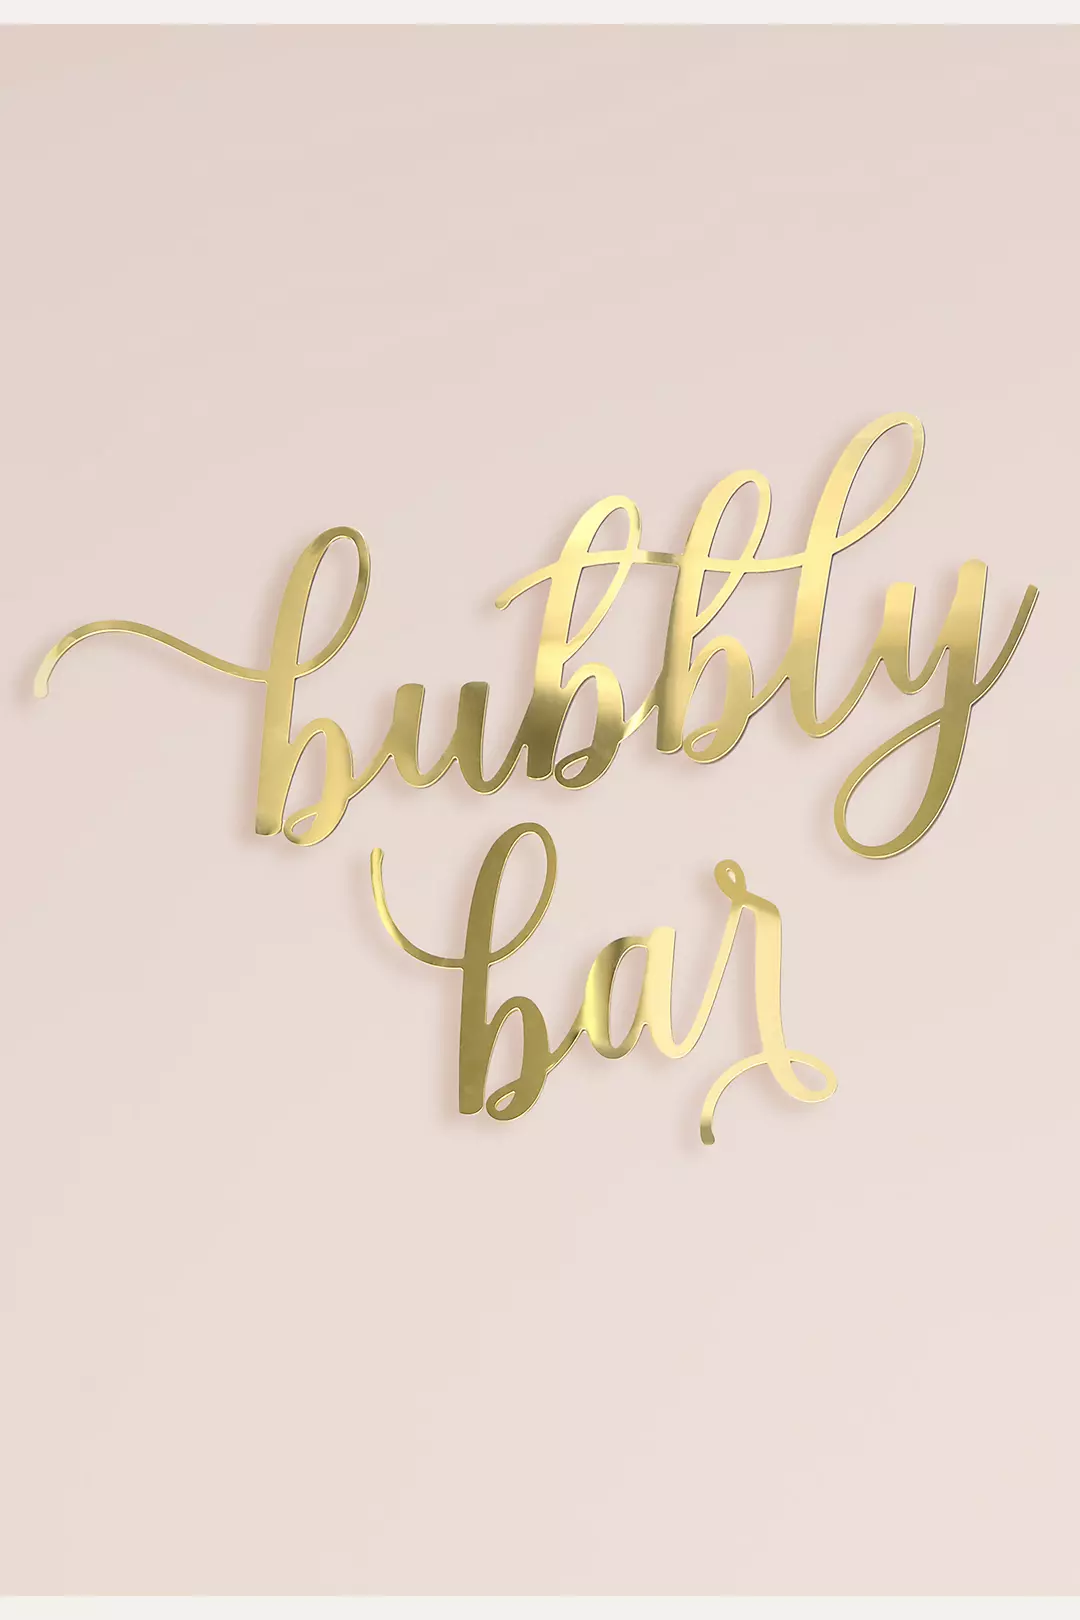 Bubbly Bar Gold Acrylic Sign Image